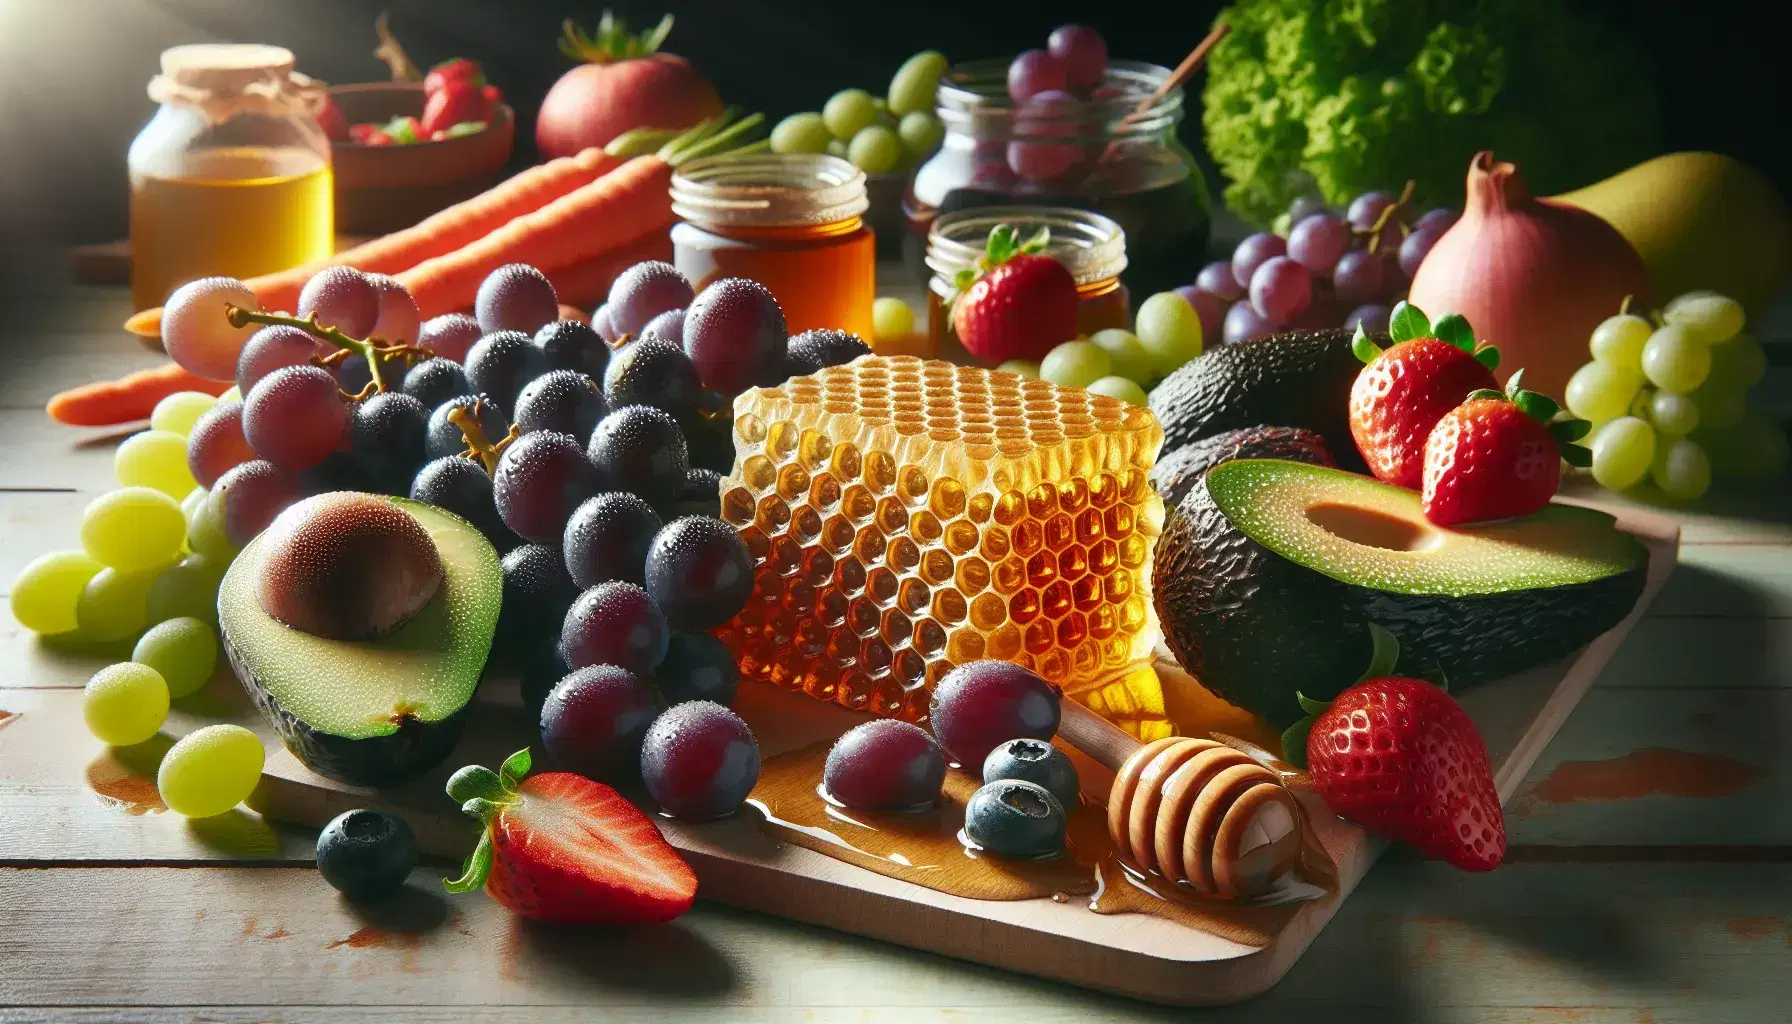 Variedad de alimentos frescos con uvas moradas, panal de miel dorado, medio aguacate con semilla y fresas rojas brillantes sobre superficie de madera clara.